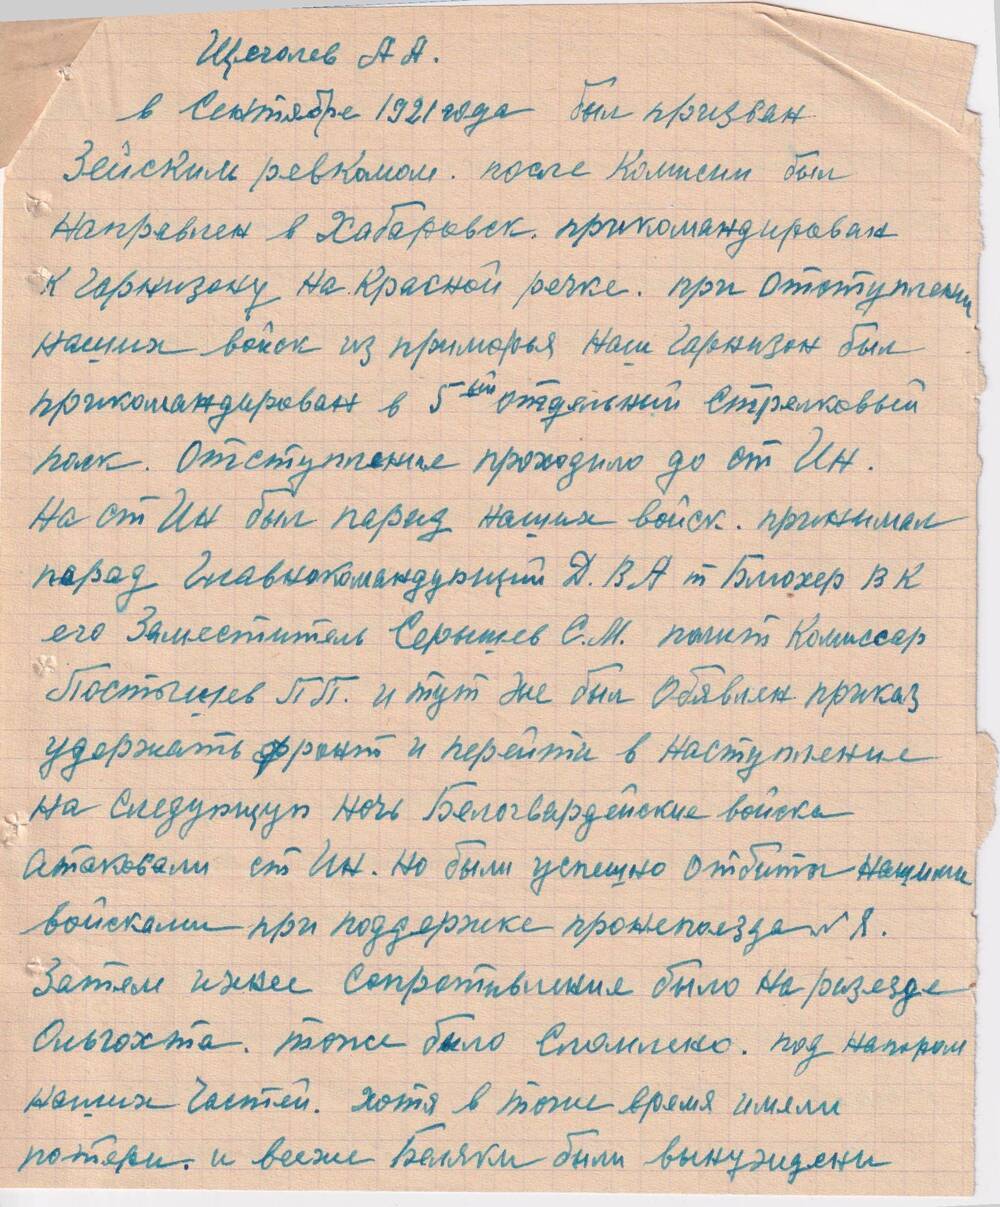 Автобиография Щеголева Артема  Александровича, участника  революционного движения  на Дальнем Востоке.